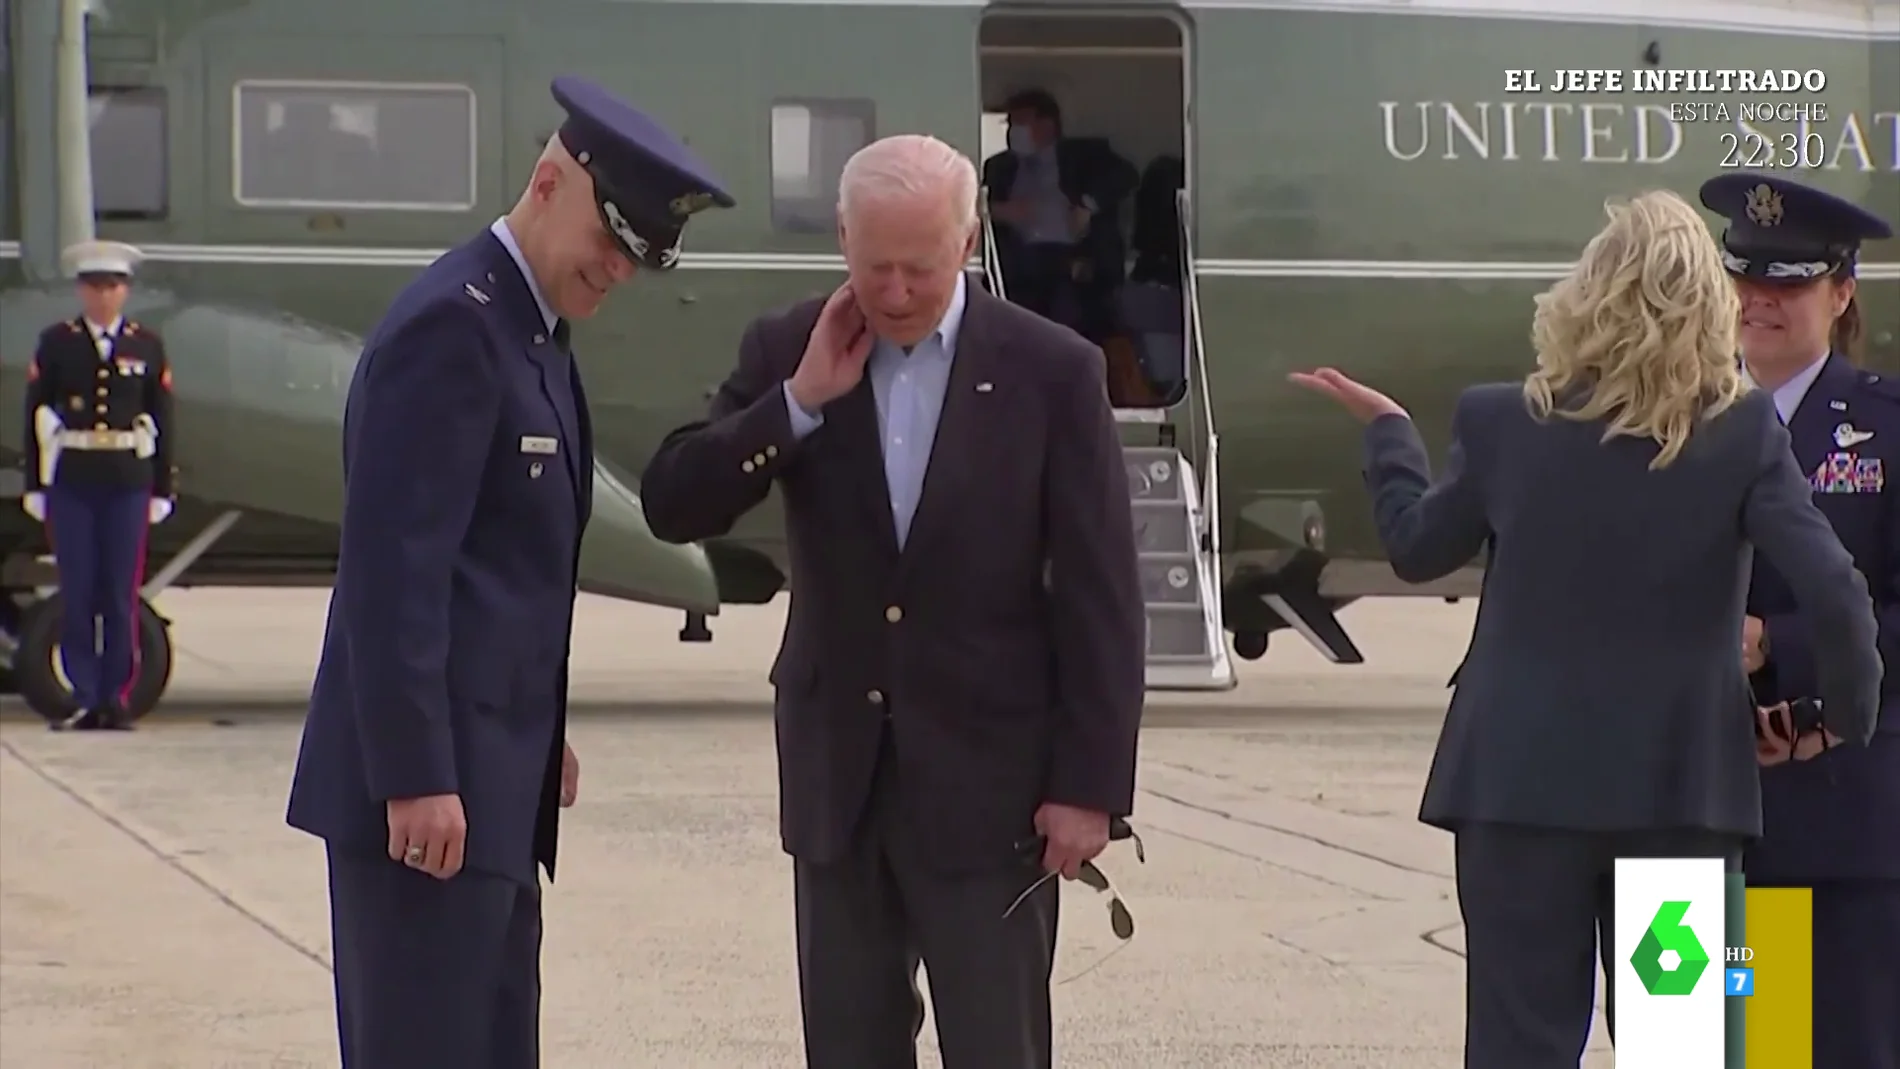 El momento en el que una cigarra ataca en el cuello a Joe Biden frente a las cámaras